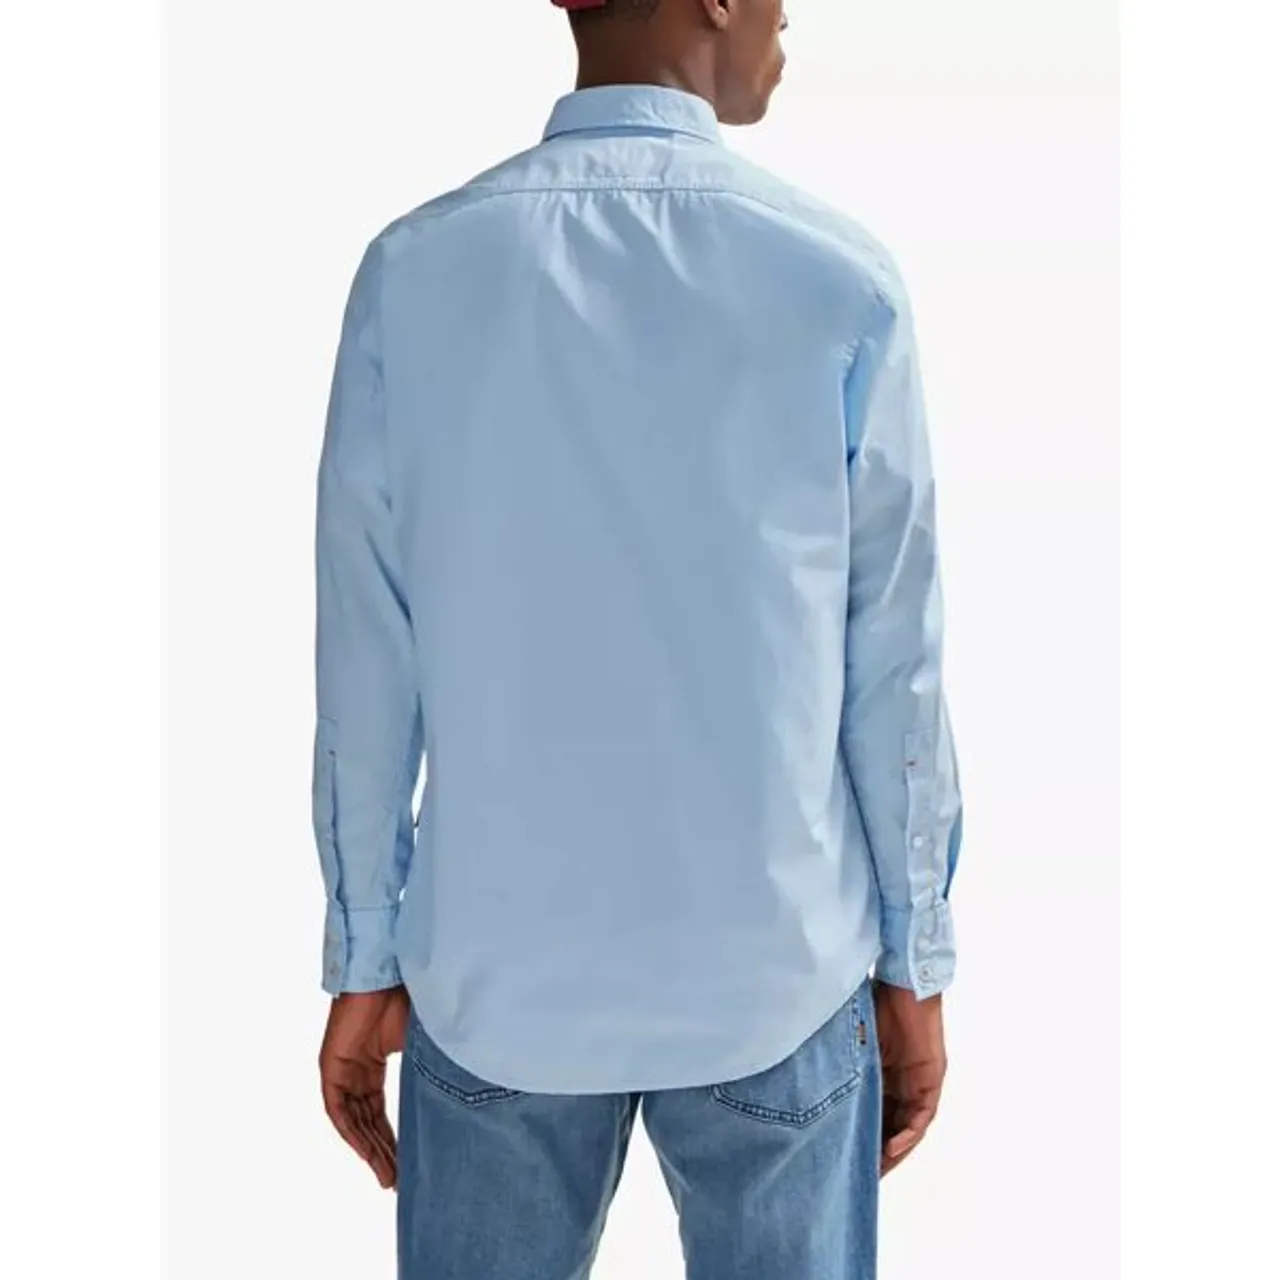 Hugo Boss BOSS Relegant Long Sleeve Shirt, Open Blue - Open Blue - Male